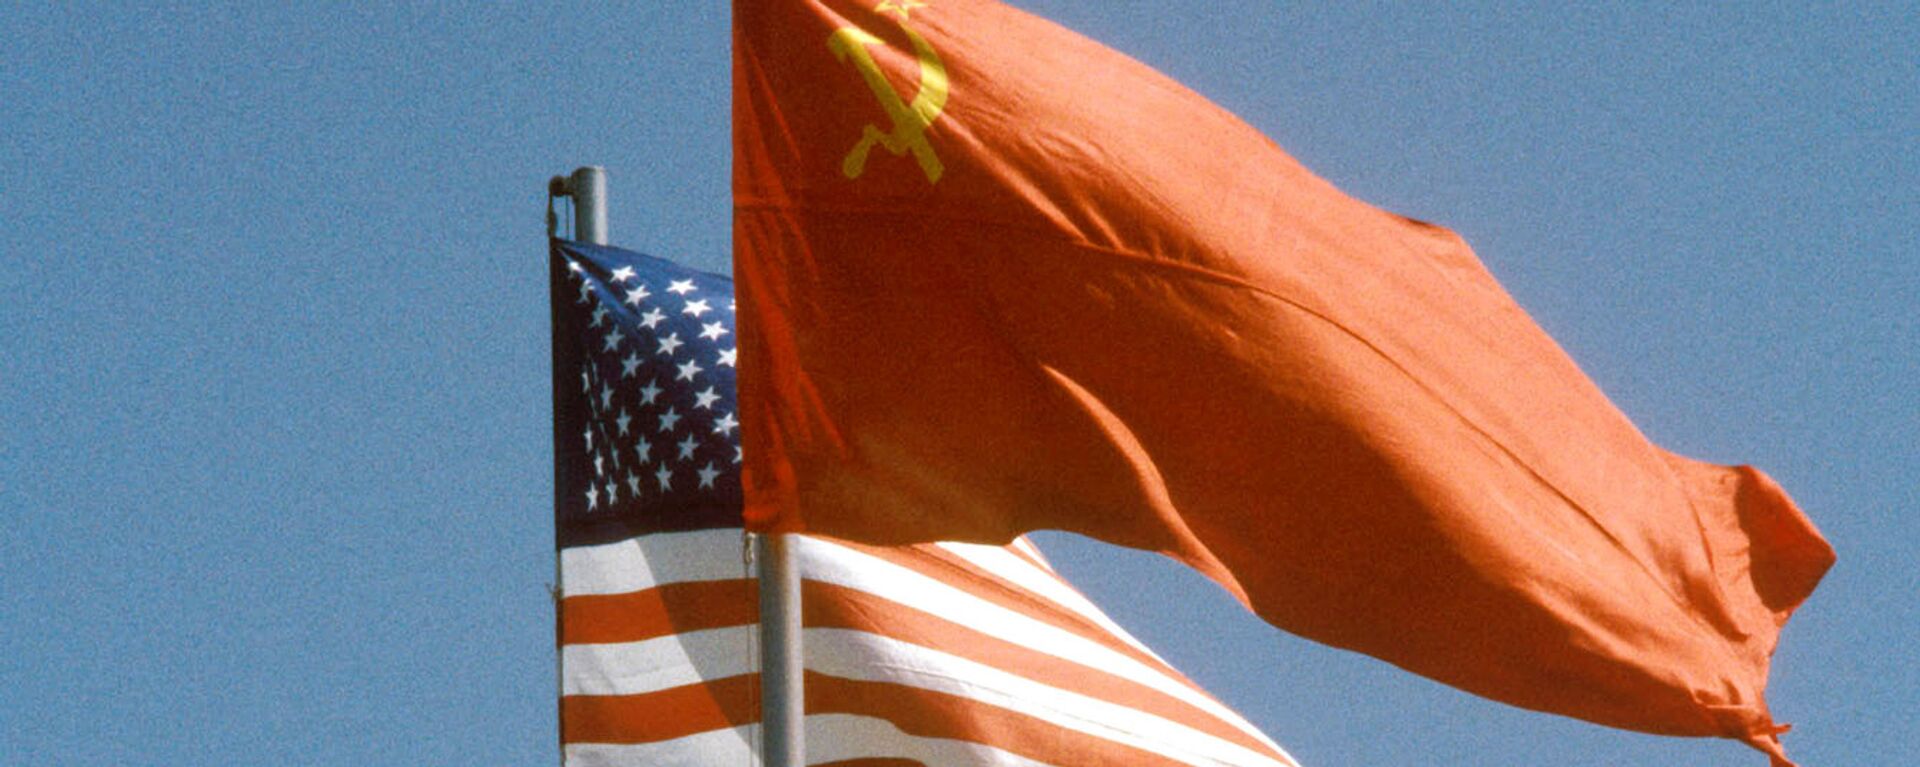 La banderas de la URSS y EEUU - Sputnik Mundo, 1920, 05.03.2021